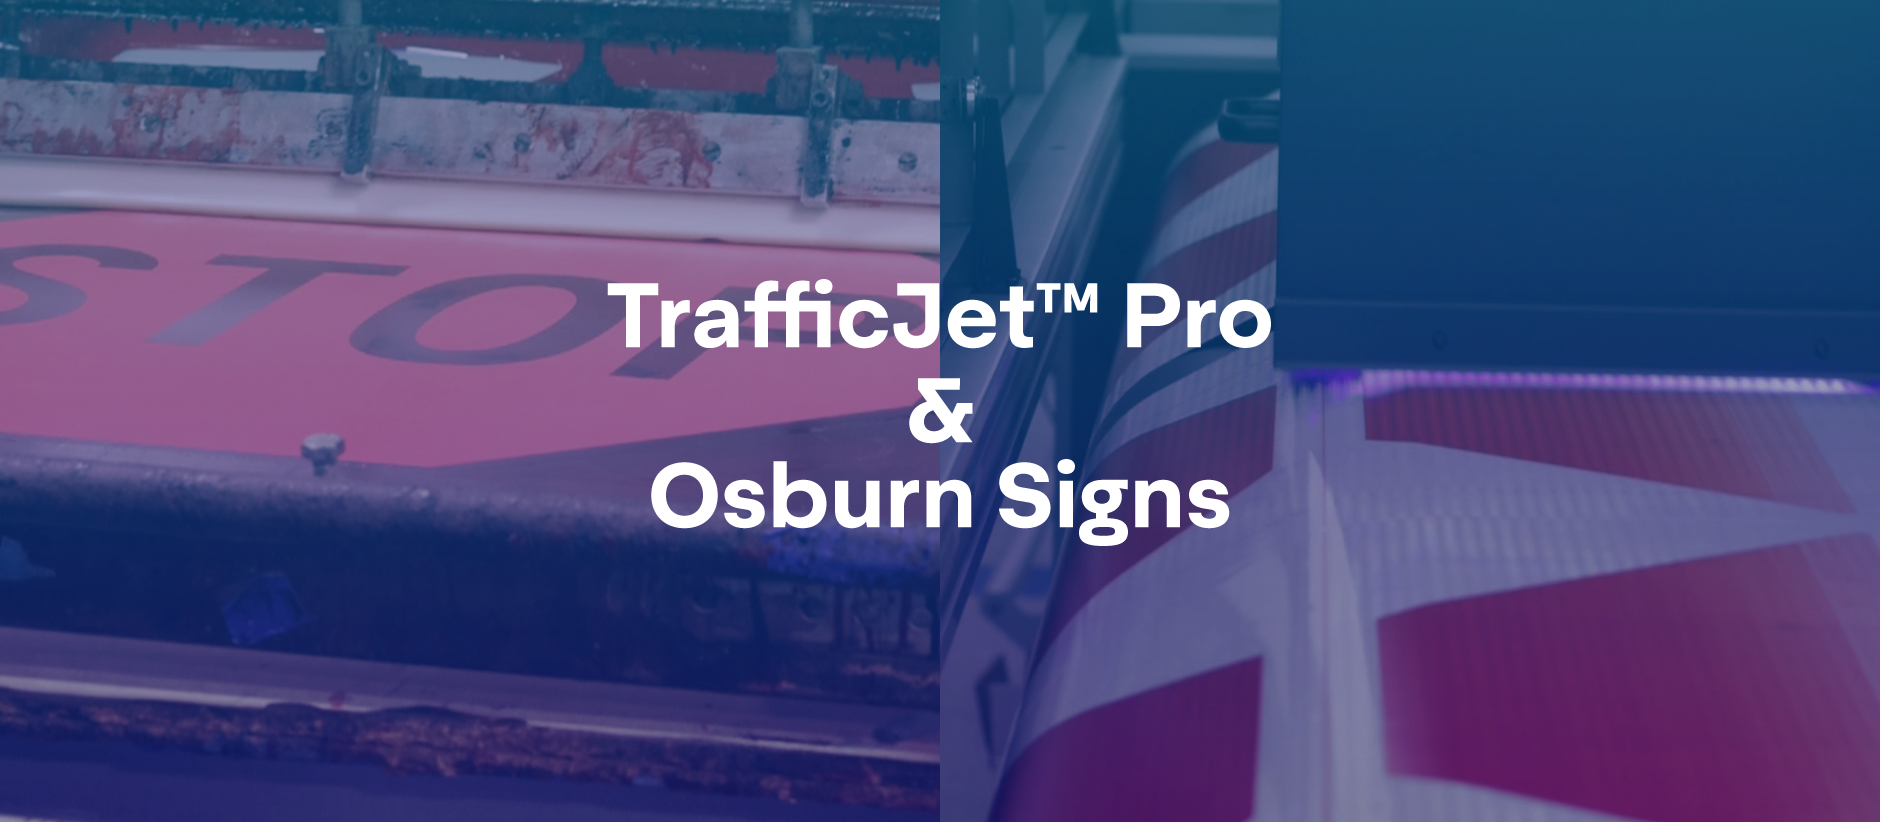 TrafficJet™ Pro & Osburn Signs